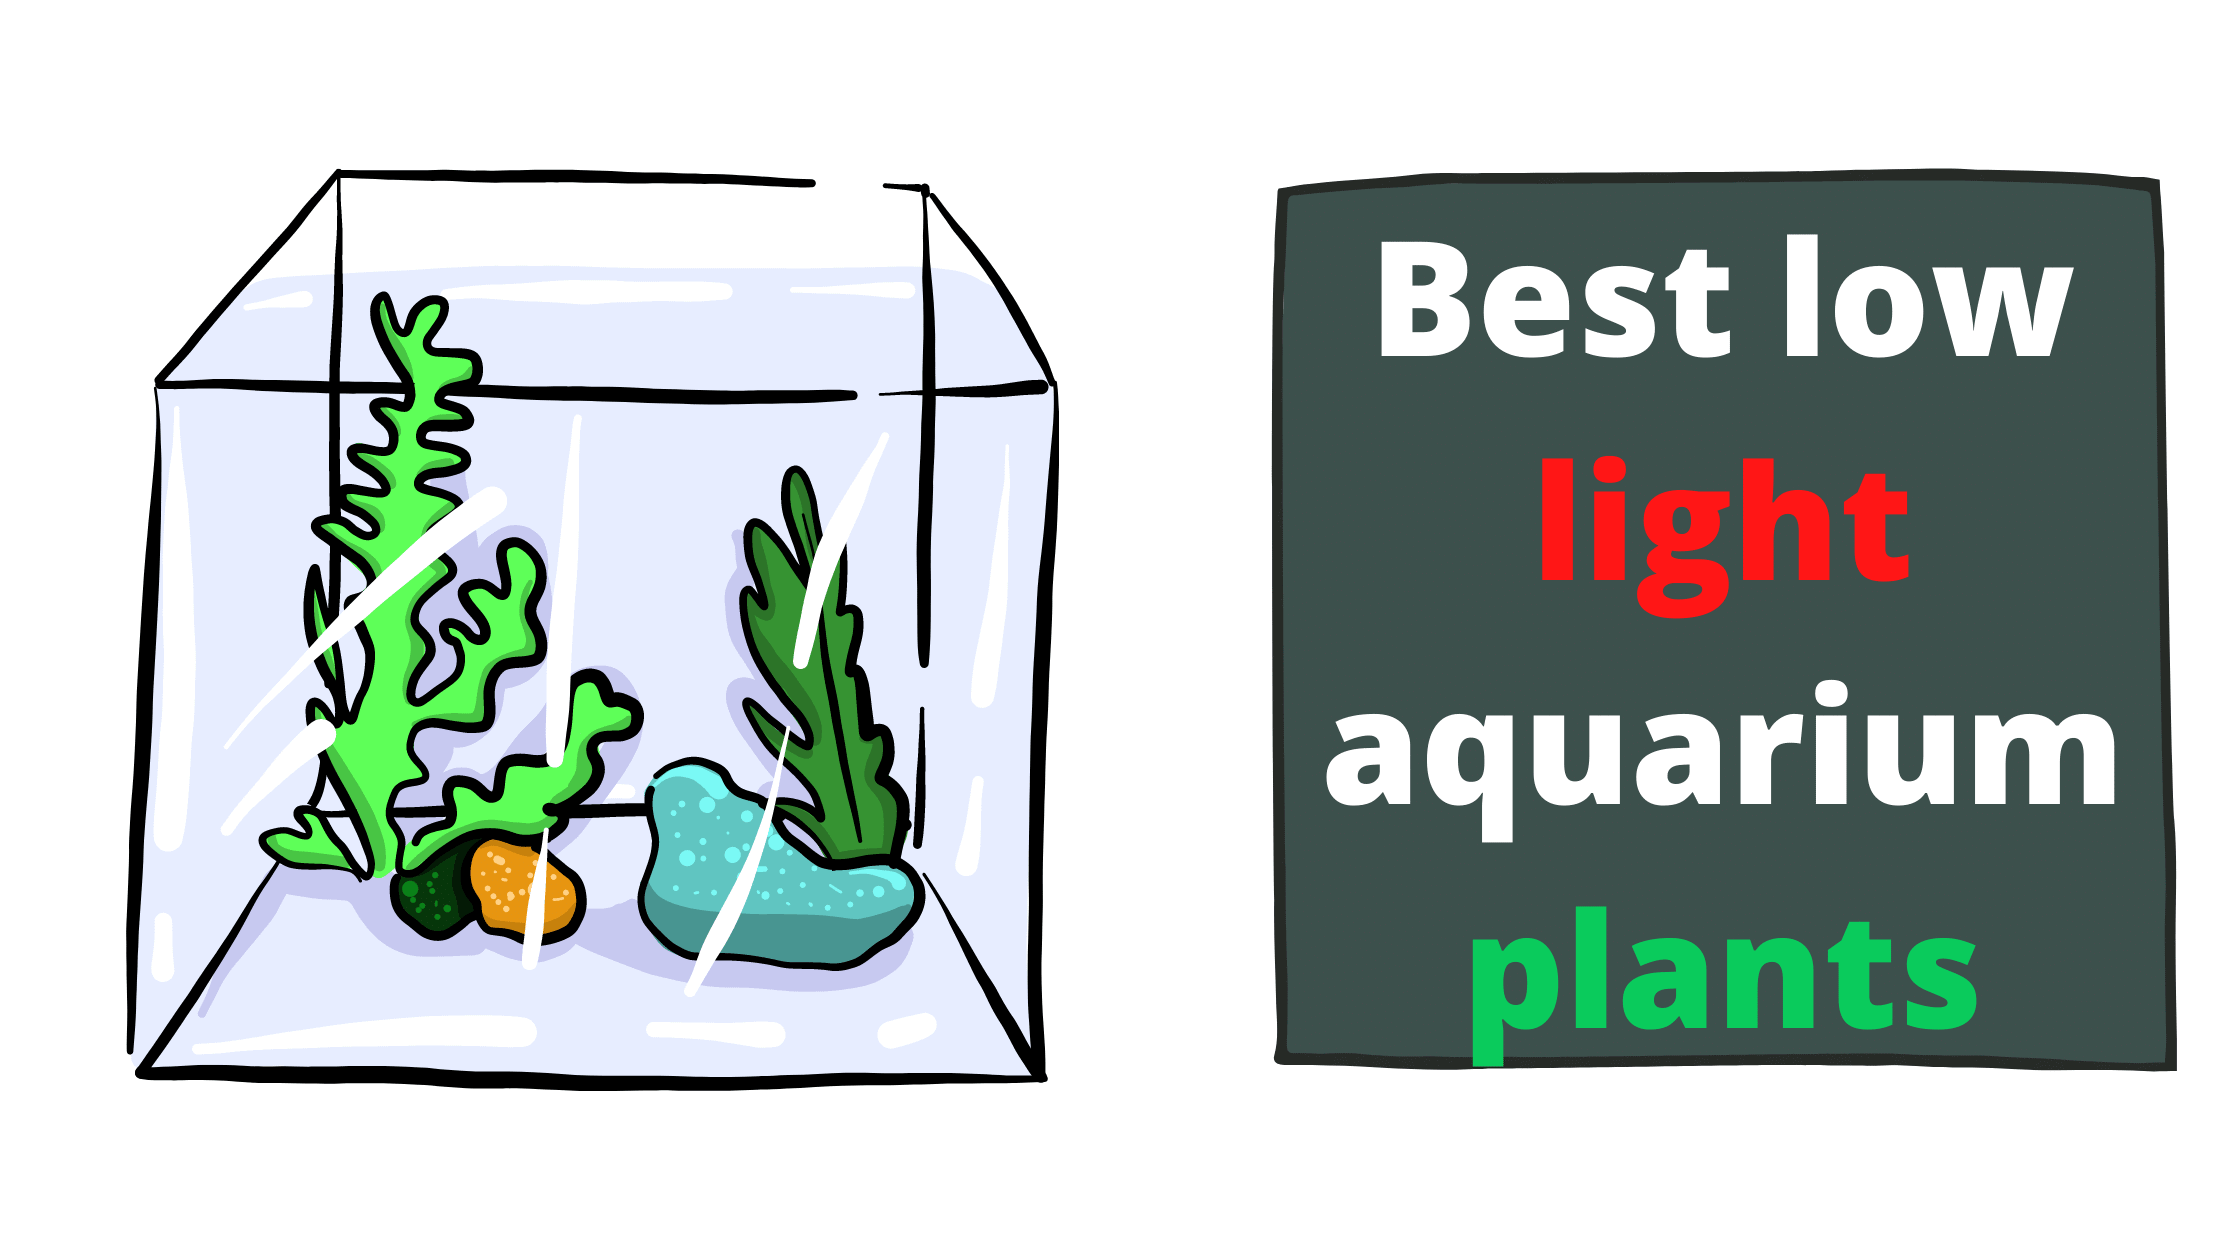 Best low light aquarium plants